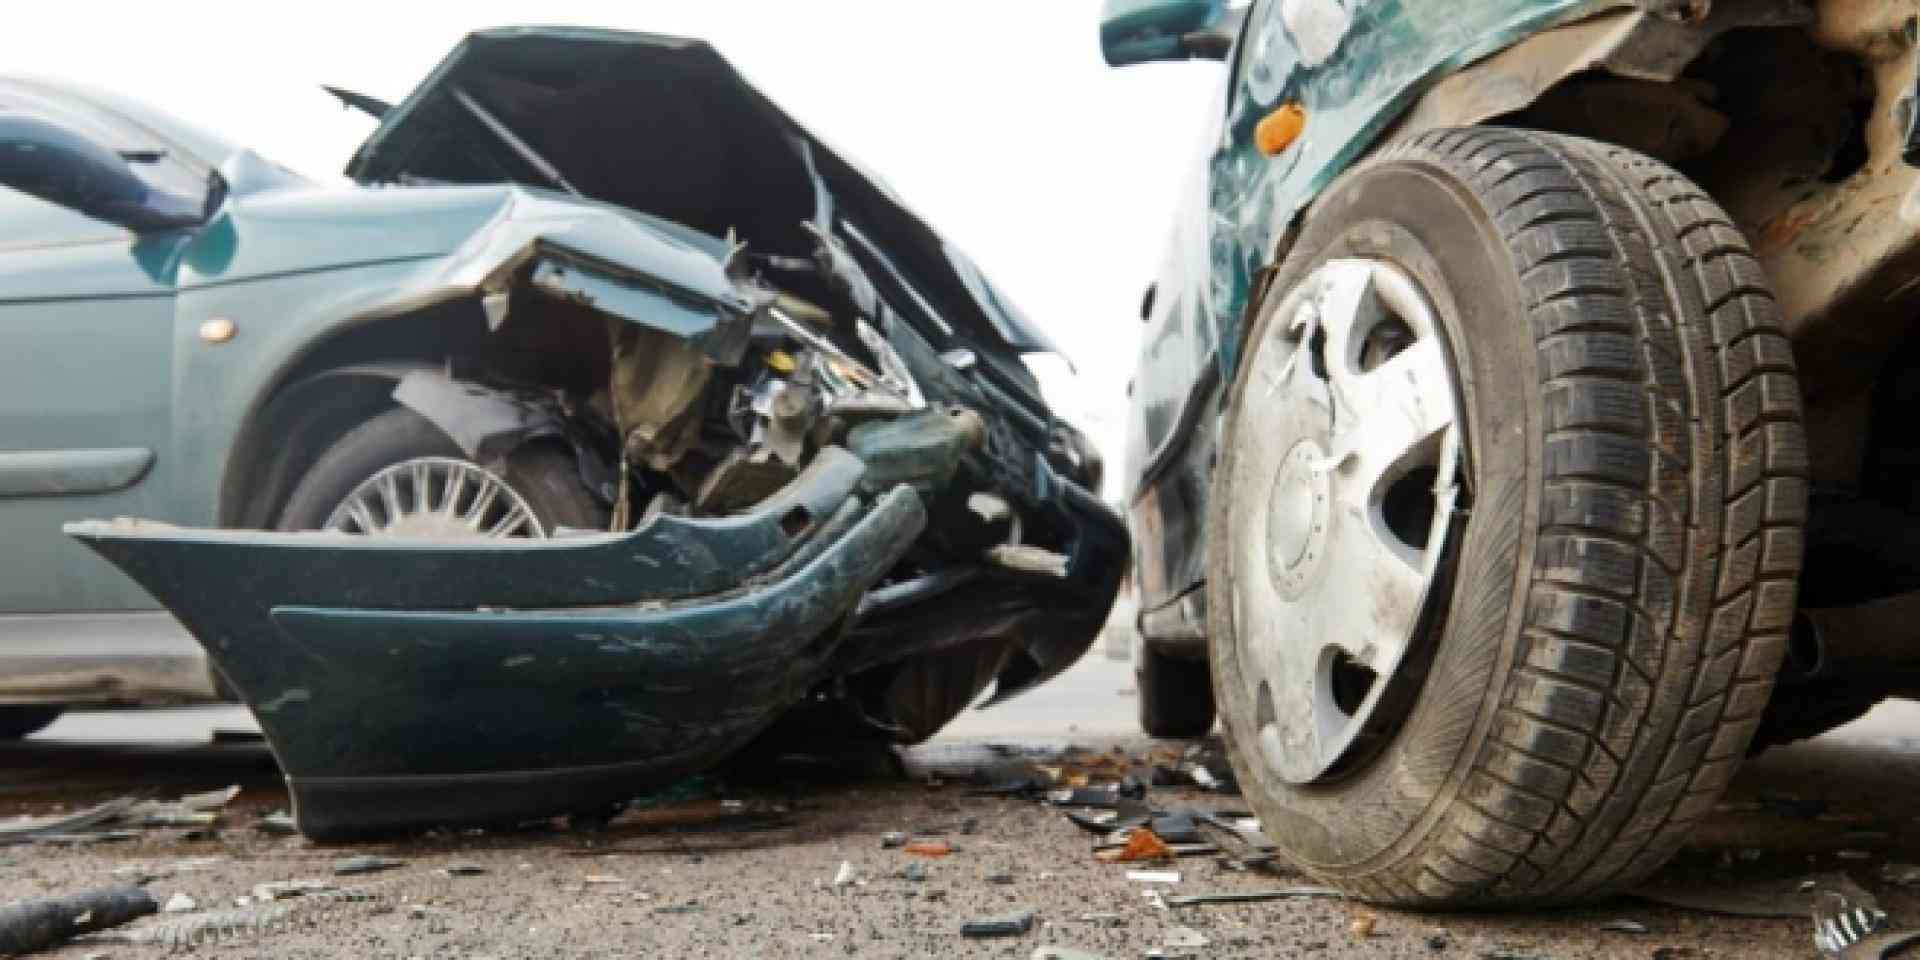 10 إصابات بحوادث تصادم مركبات في عمان وعجلون